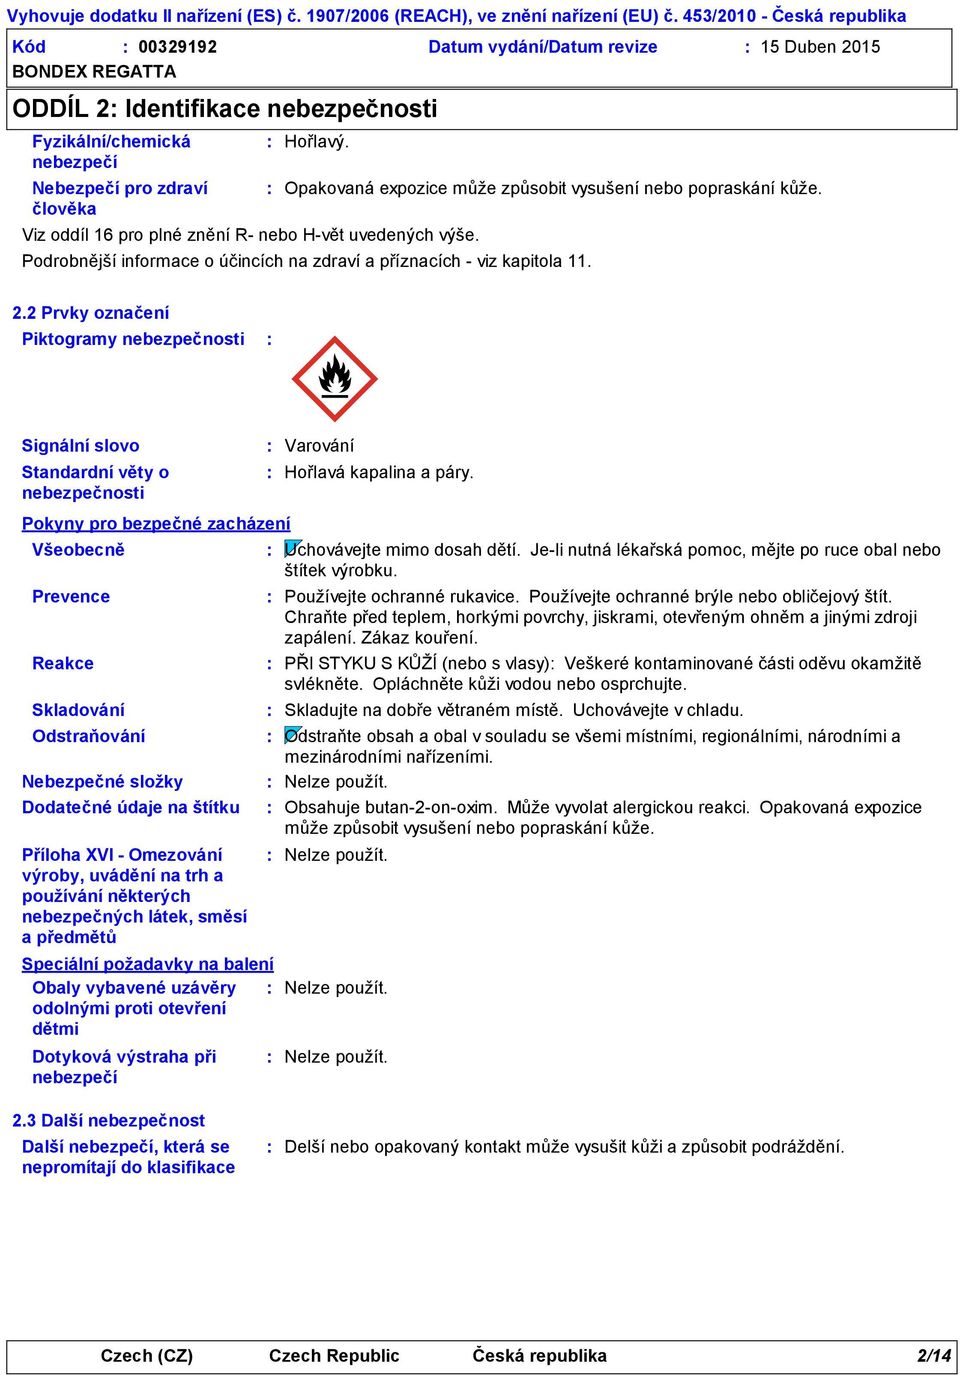 2 Prvky označení Piktogramy nebezpečnosti Signální slovo Standardní věty o nebezpečnosti Pokyny pro bezpečné zacházení Všeobecně Prevence Reakce Skladování Varování Hořlavá kapalina a páry.